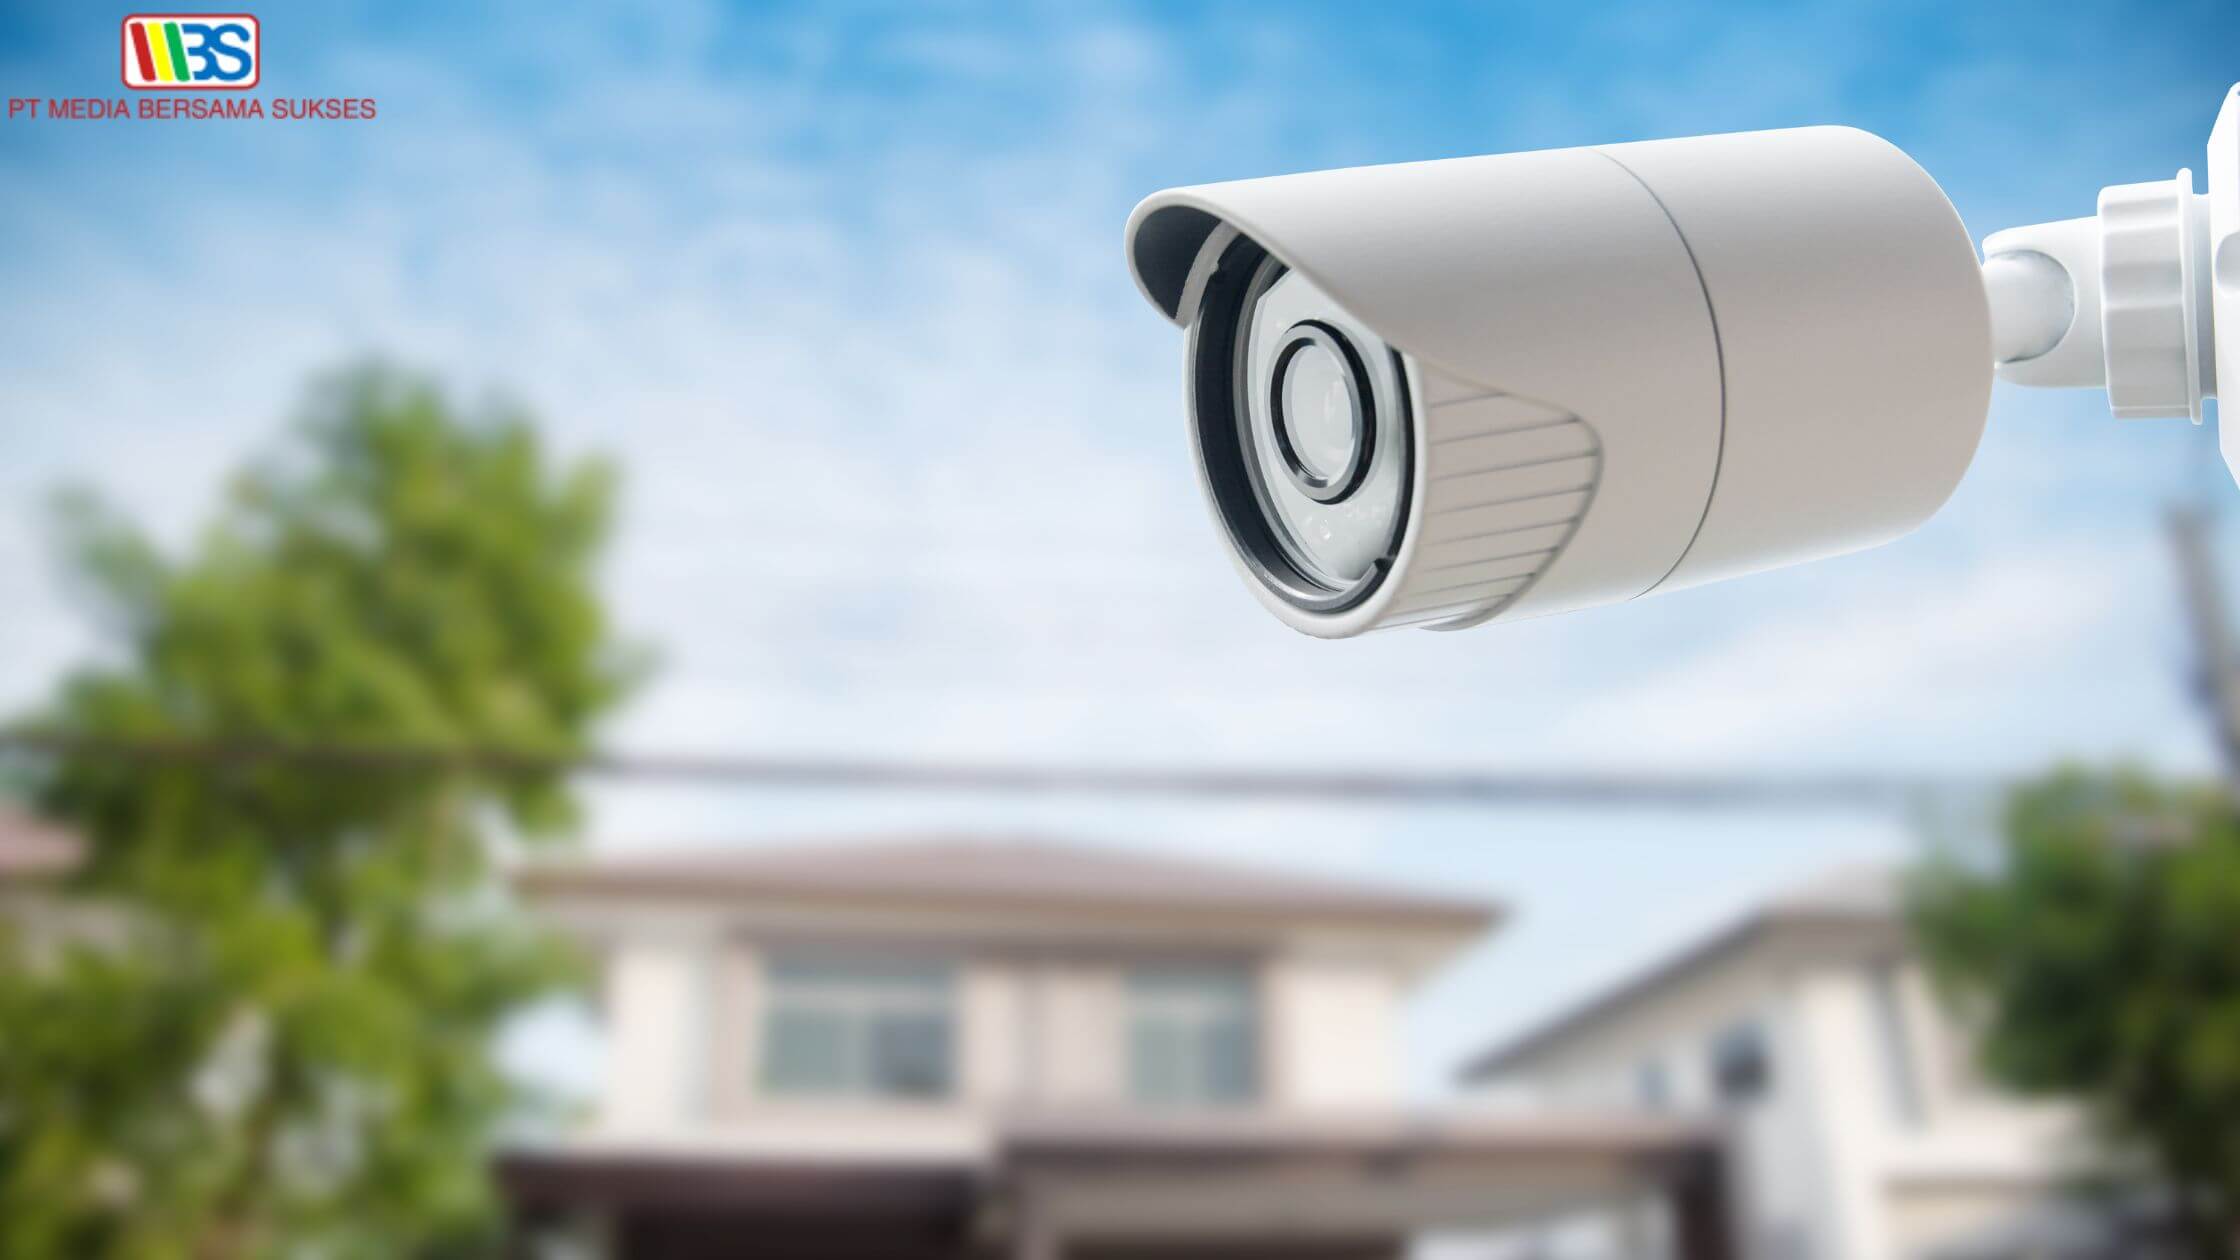 Rekomendasi Penyedia CCTV Terpercaya untuk Perumahan